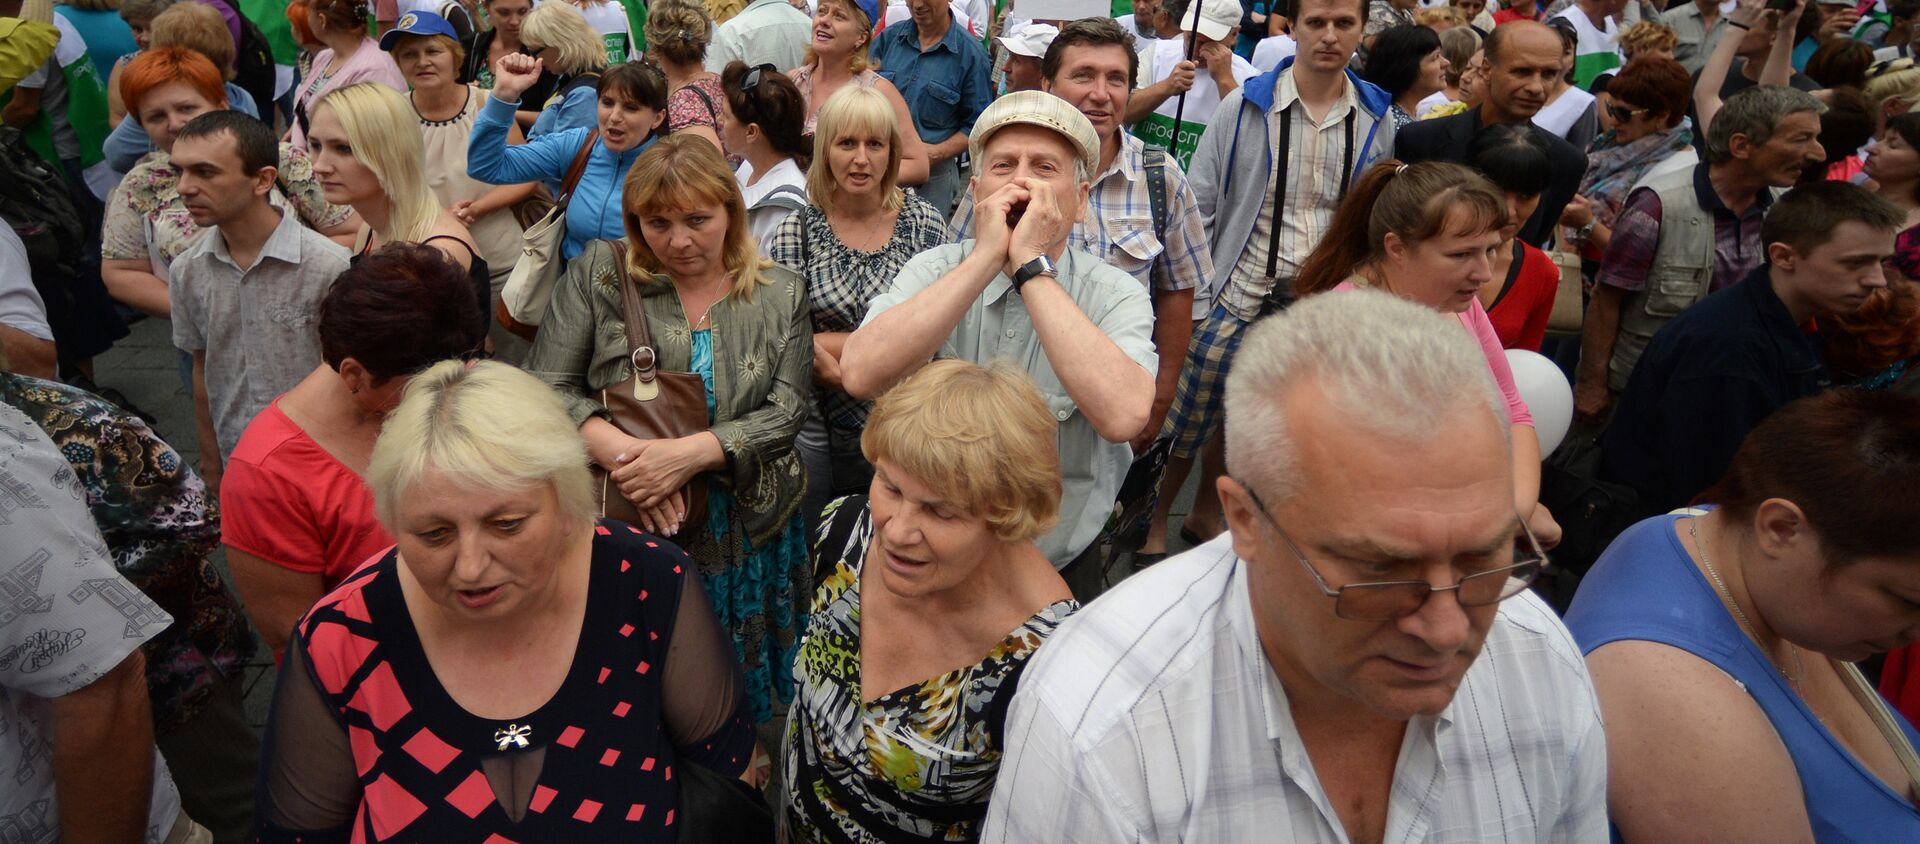 Всеукраинский марш протеста в Киеве - Sputnik Узбекистан, 1920, 06.07.2016